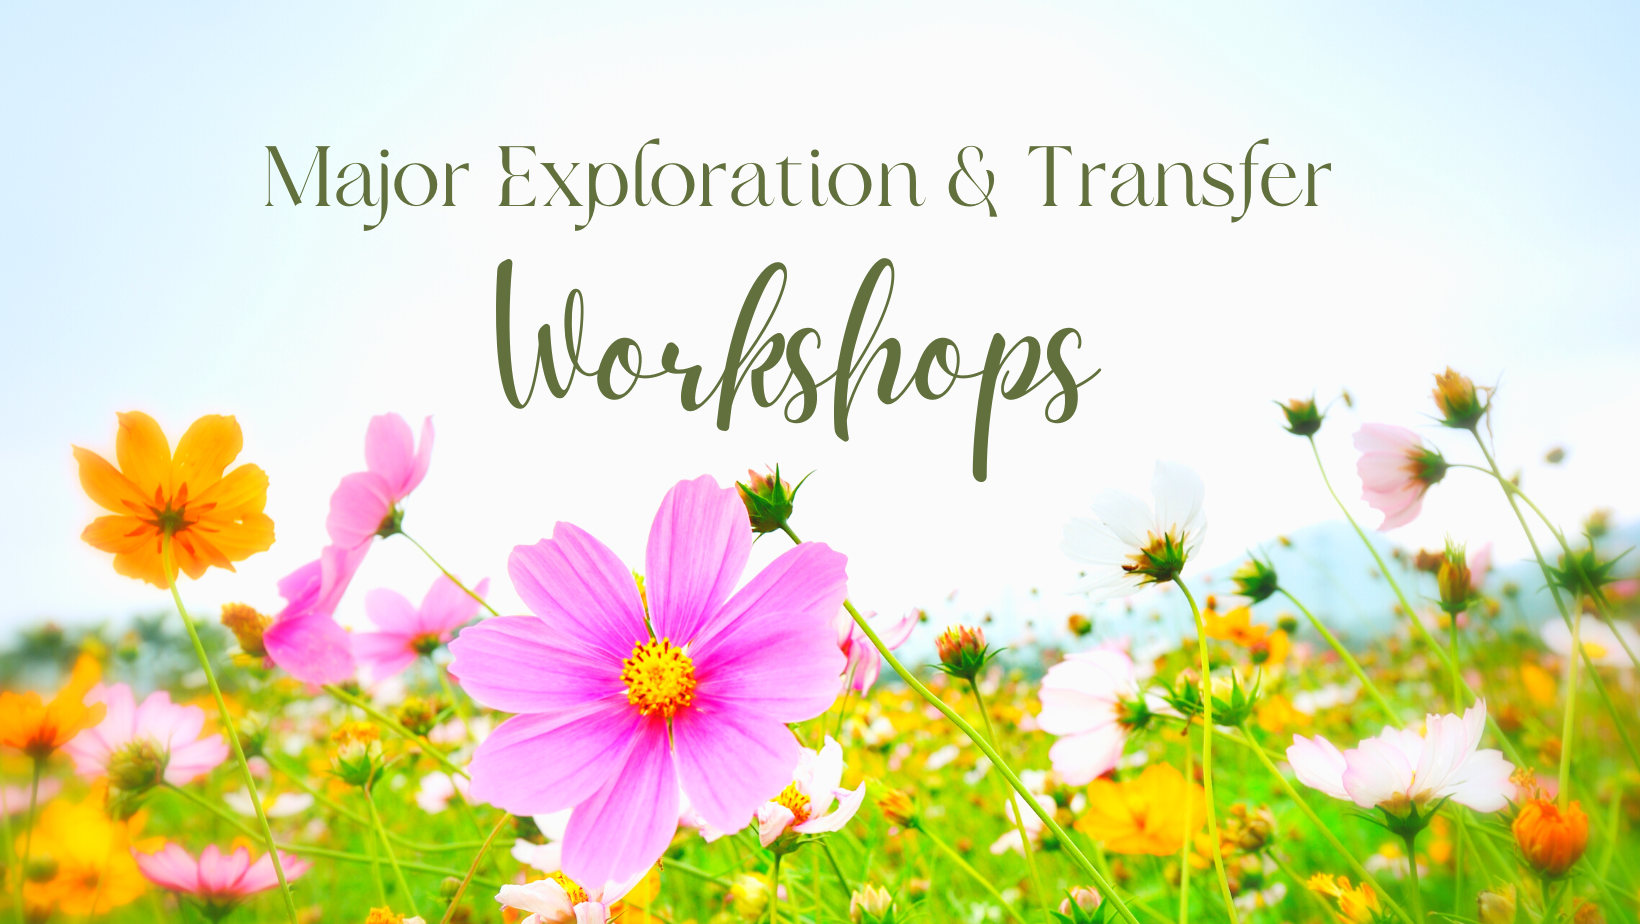 Major Exploration and Transfer Workshops